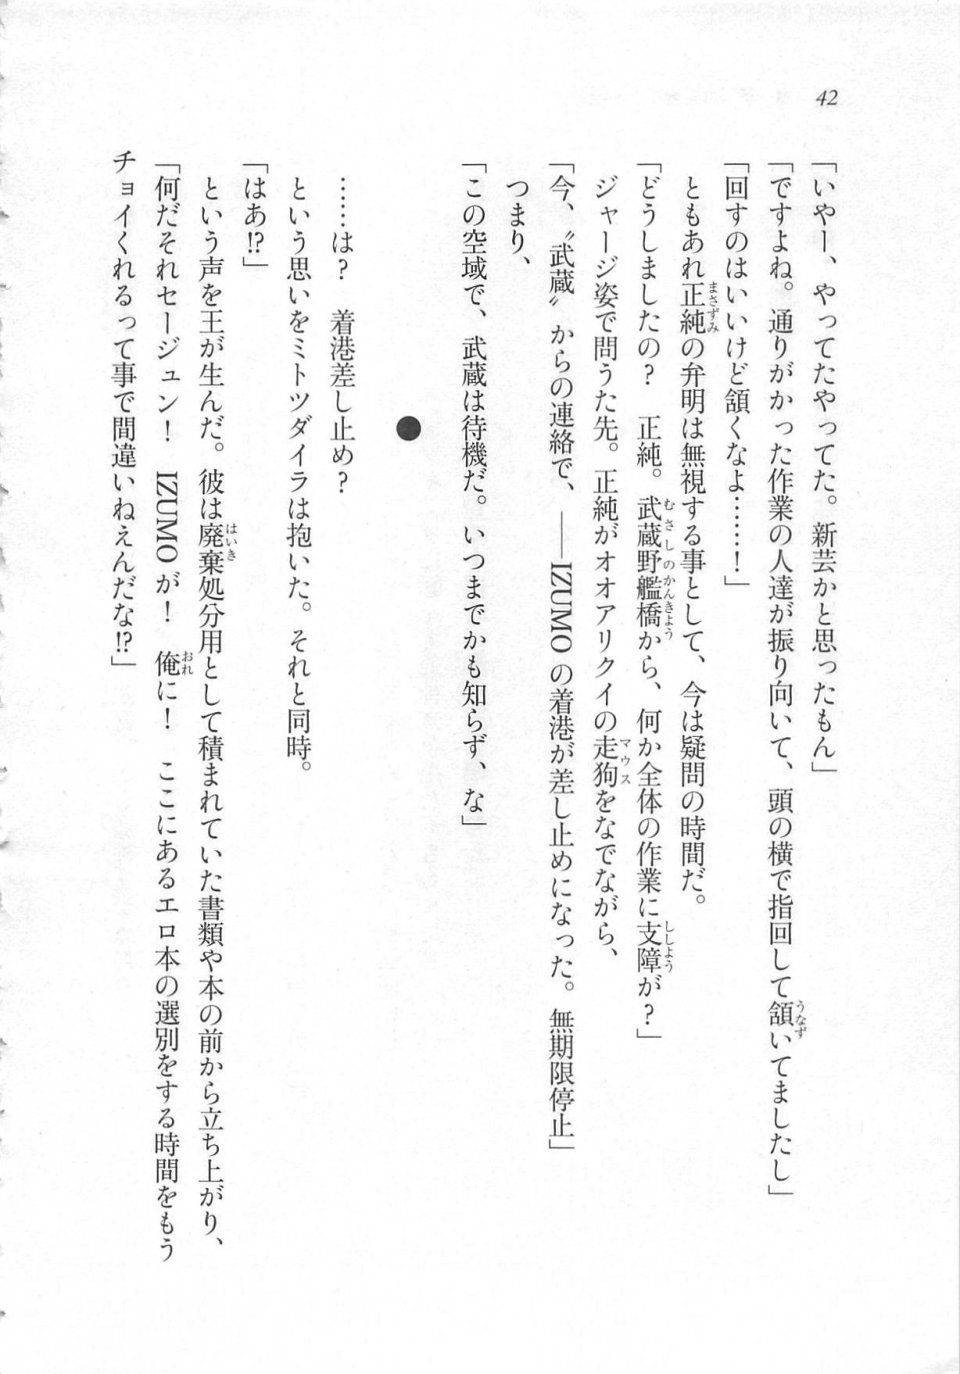 Kyoukai Senjou no Horizon LN Sidestory Vol 3 - Photo #46